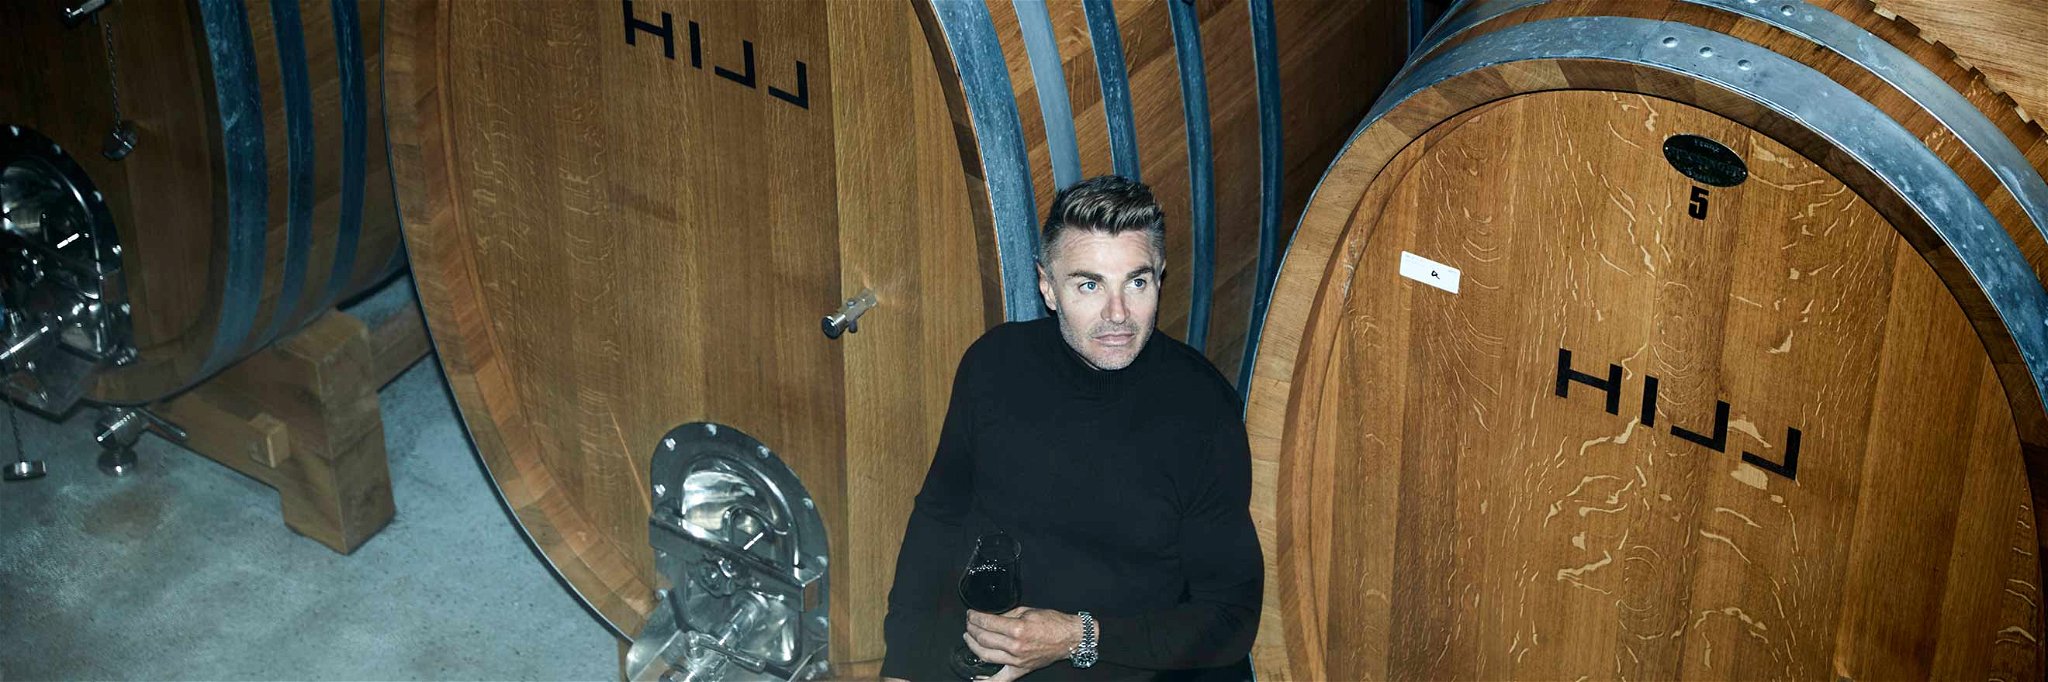 Leo Hillinger mauserte sich vom Sohn eines burgenländischen Weinhändlers zum bekanntesten Winzer Österreichs.&nbsp;